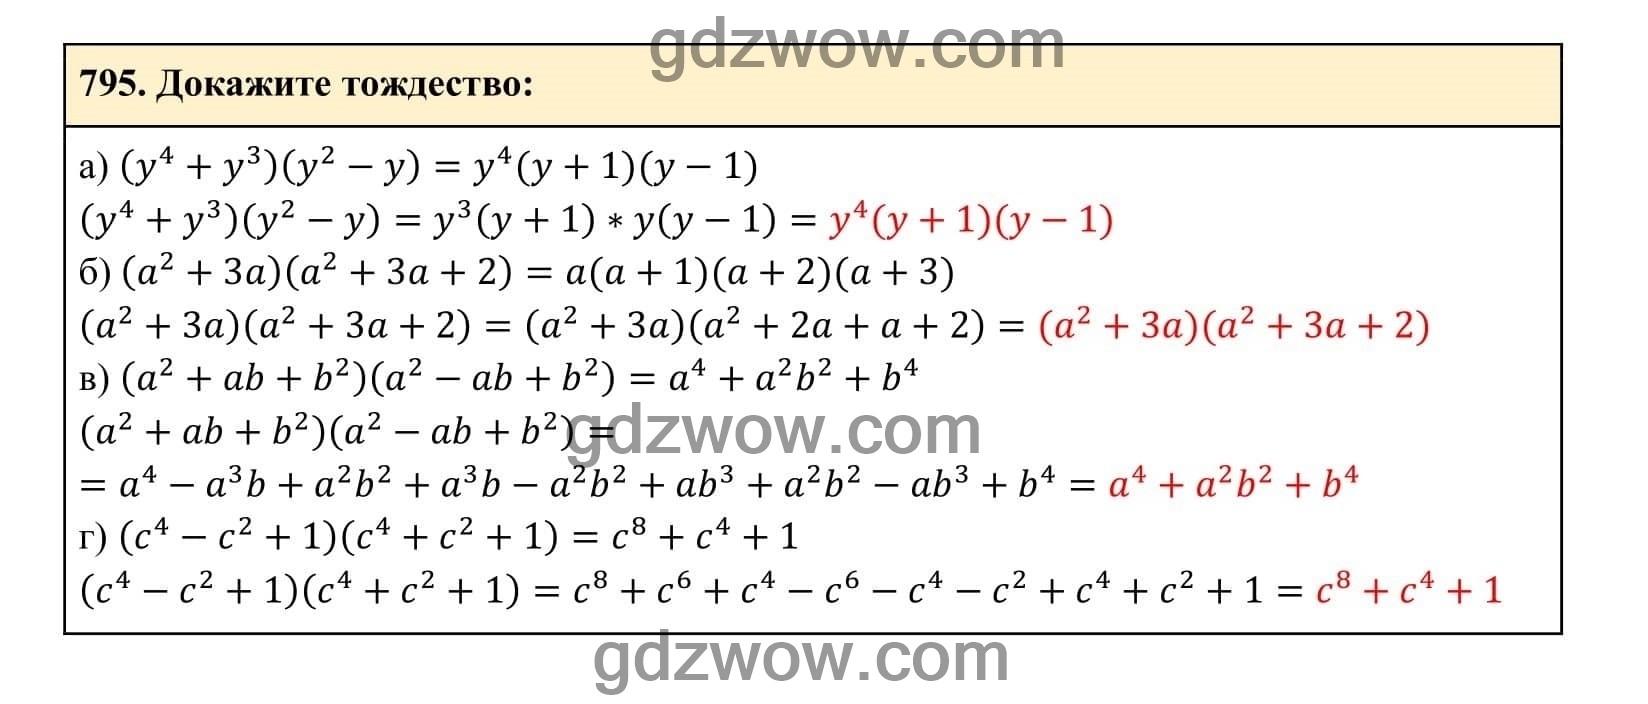 Упражнение 795 - ГДЗ по Алгебре 7 класс Учебник Макарычев (решебник) - GDZwow